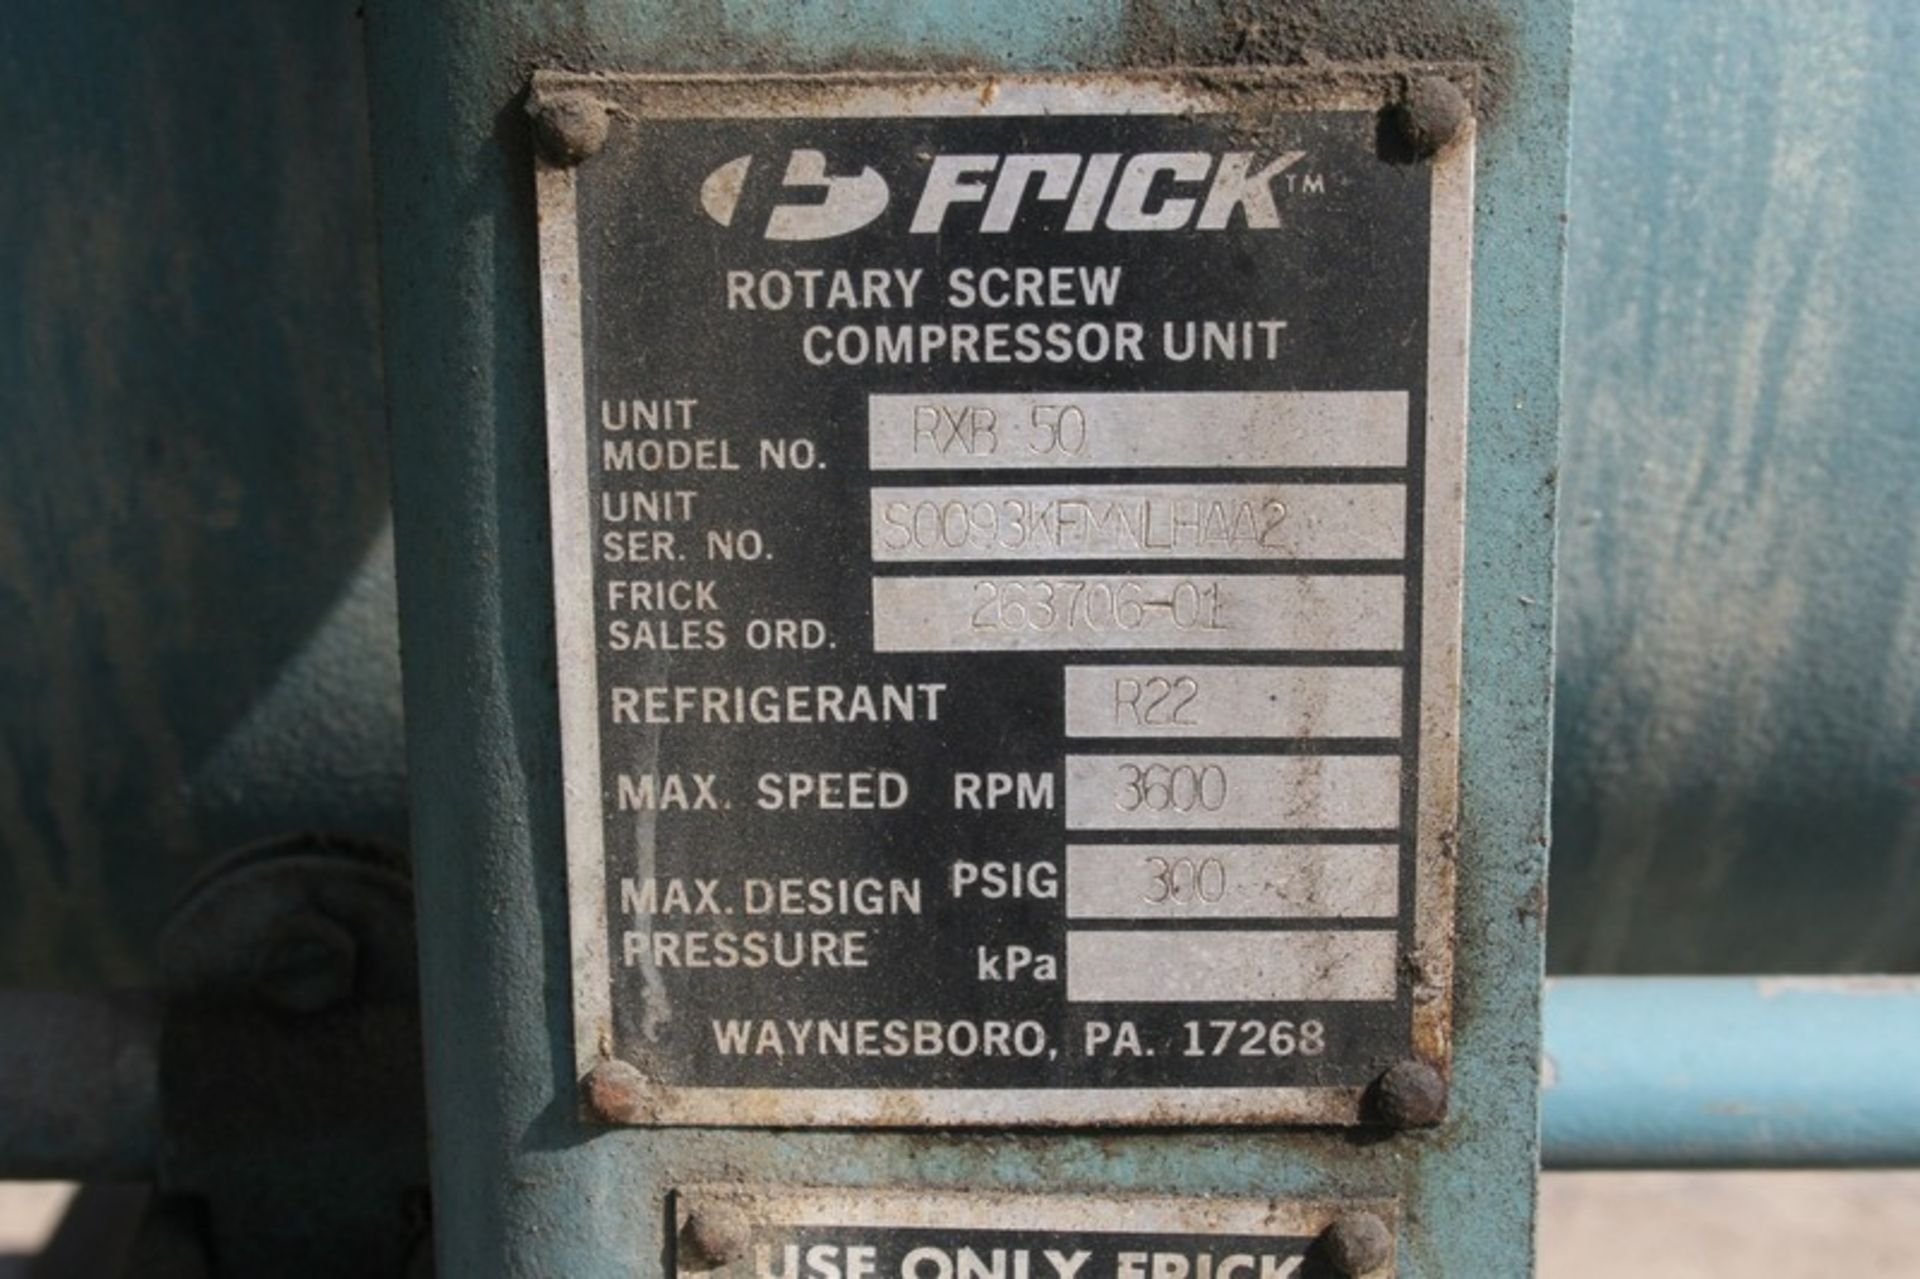 Frick 125 hp Screw Ammonia Air Compressor, Model RXB 50, S/N S0093KFMNLHAA2, RPM 3450, Volt 460, - Bild 9 aus 9